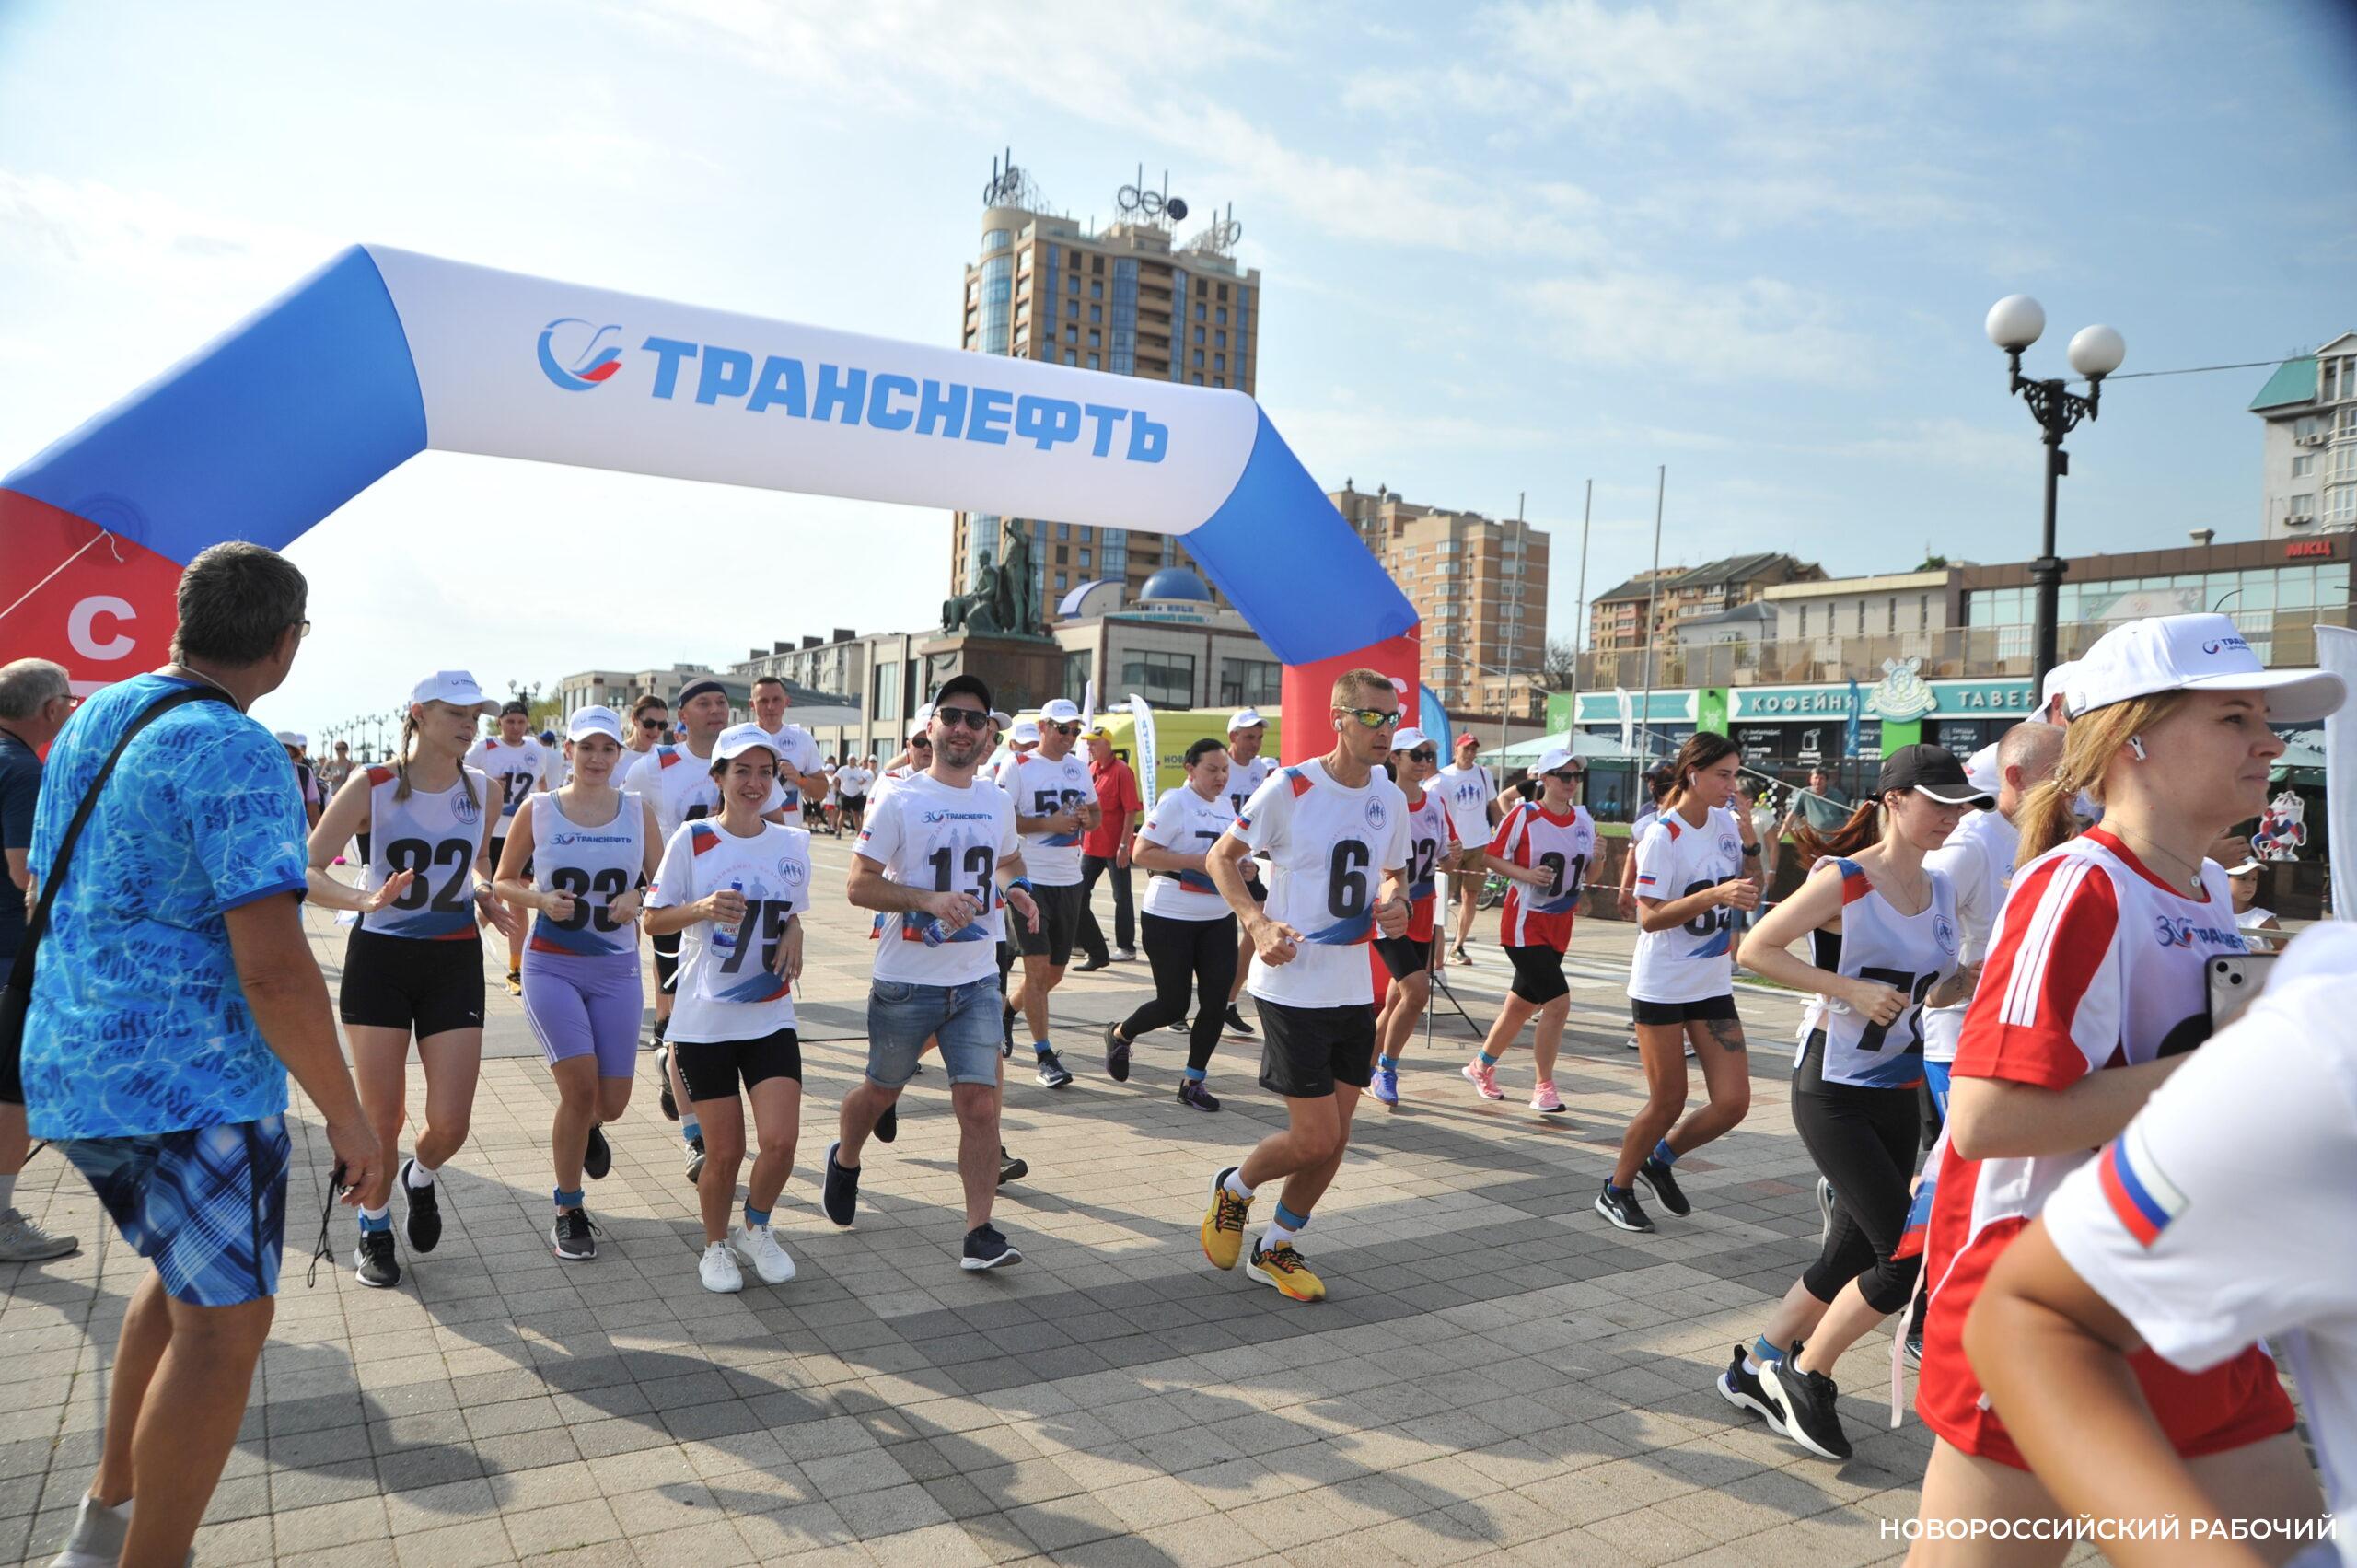 Большой праздник спорта и творчества подарили городу сотрудники АО «Черномортранснефть»